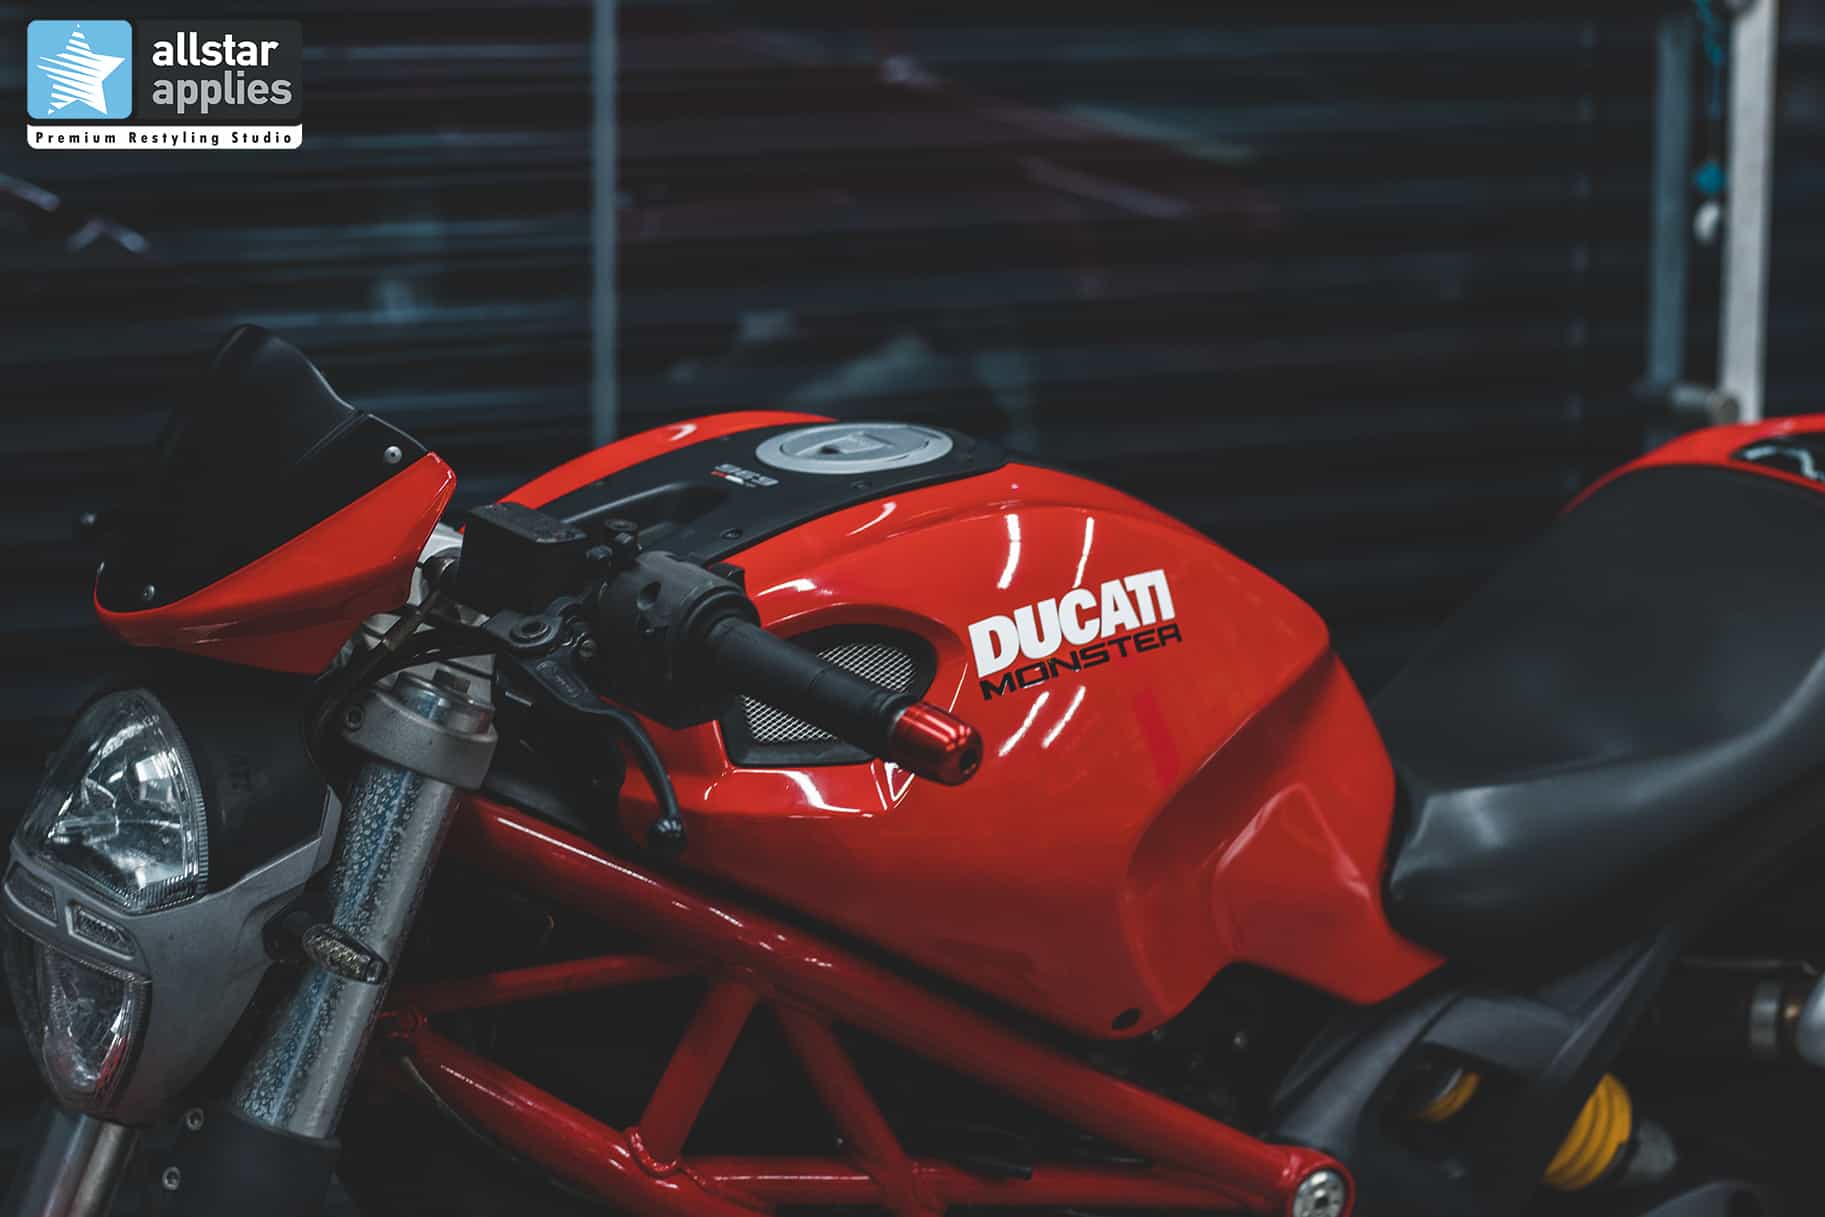 Αυτοκόλλητα Αλλαγής χρώματος σε μηχανή Ducati στη θεσσαλονίκη, Allstar Applies